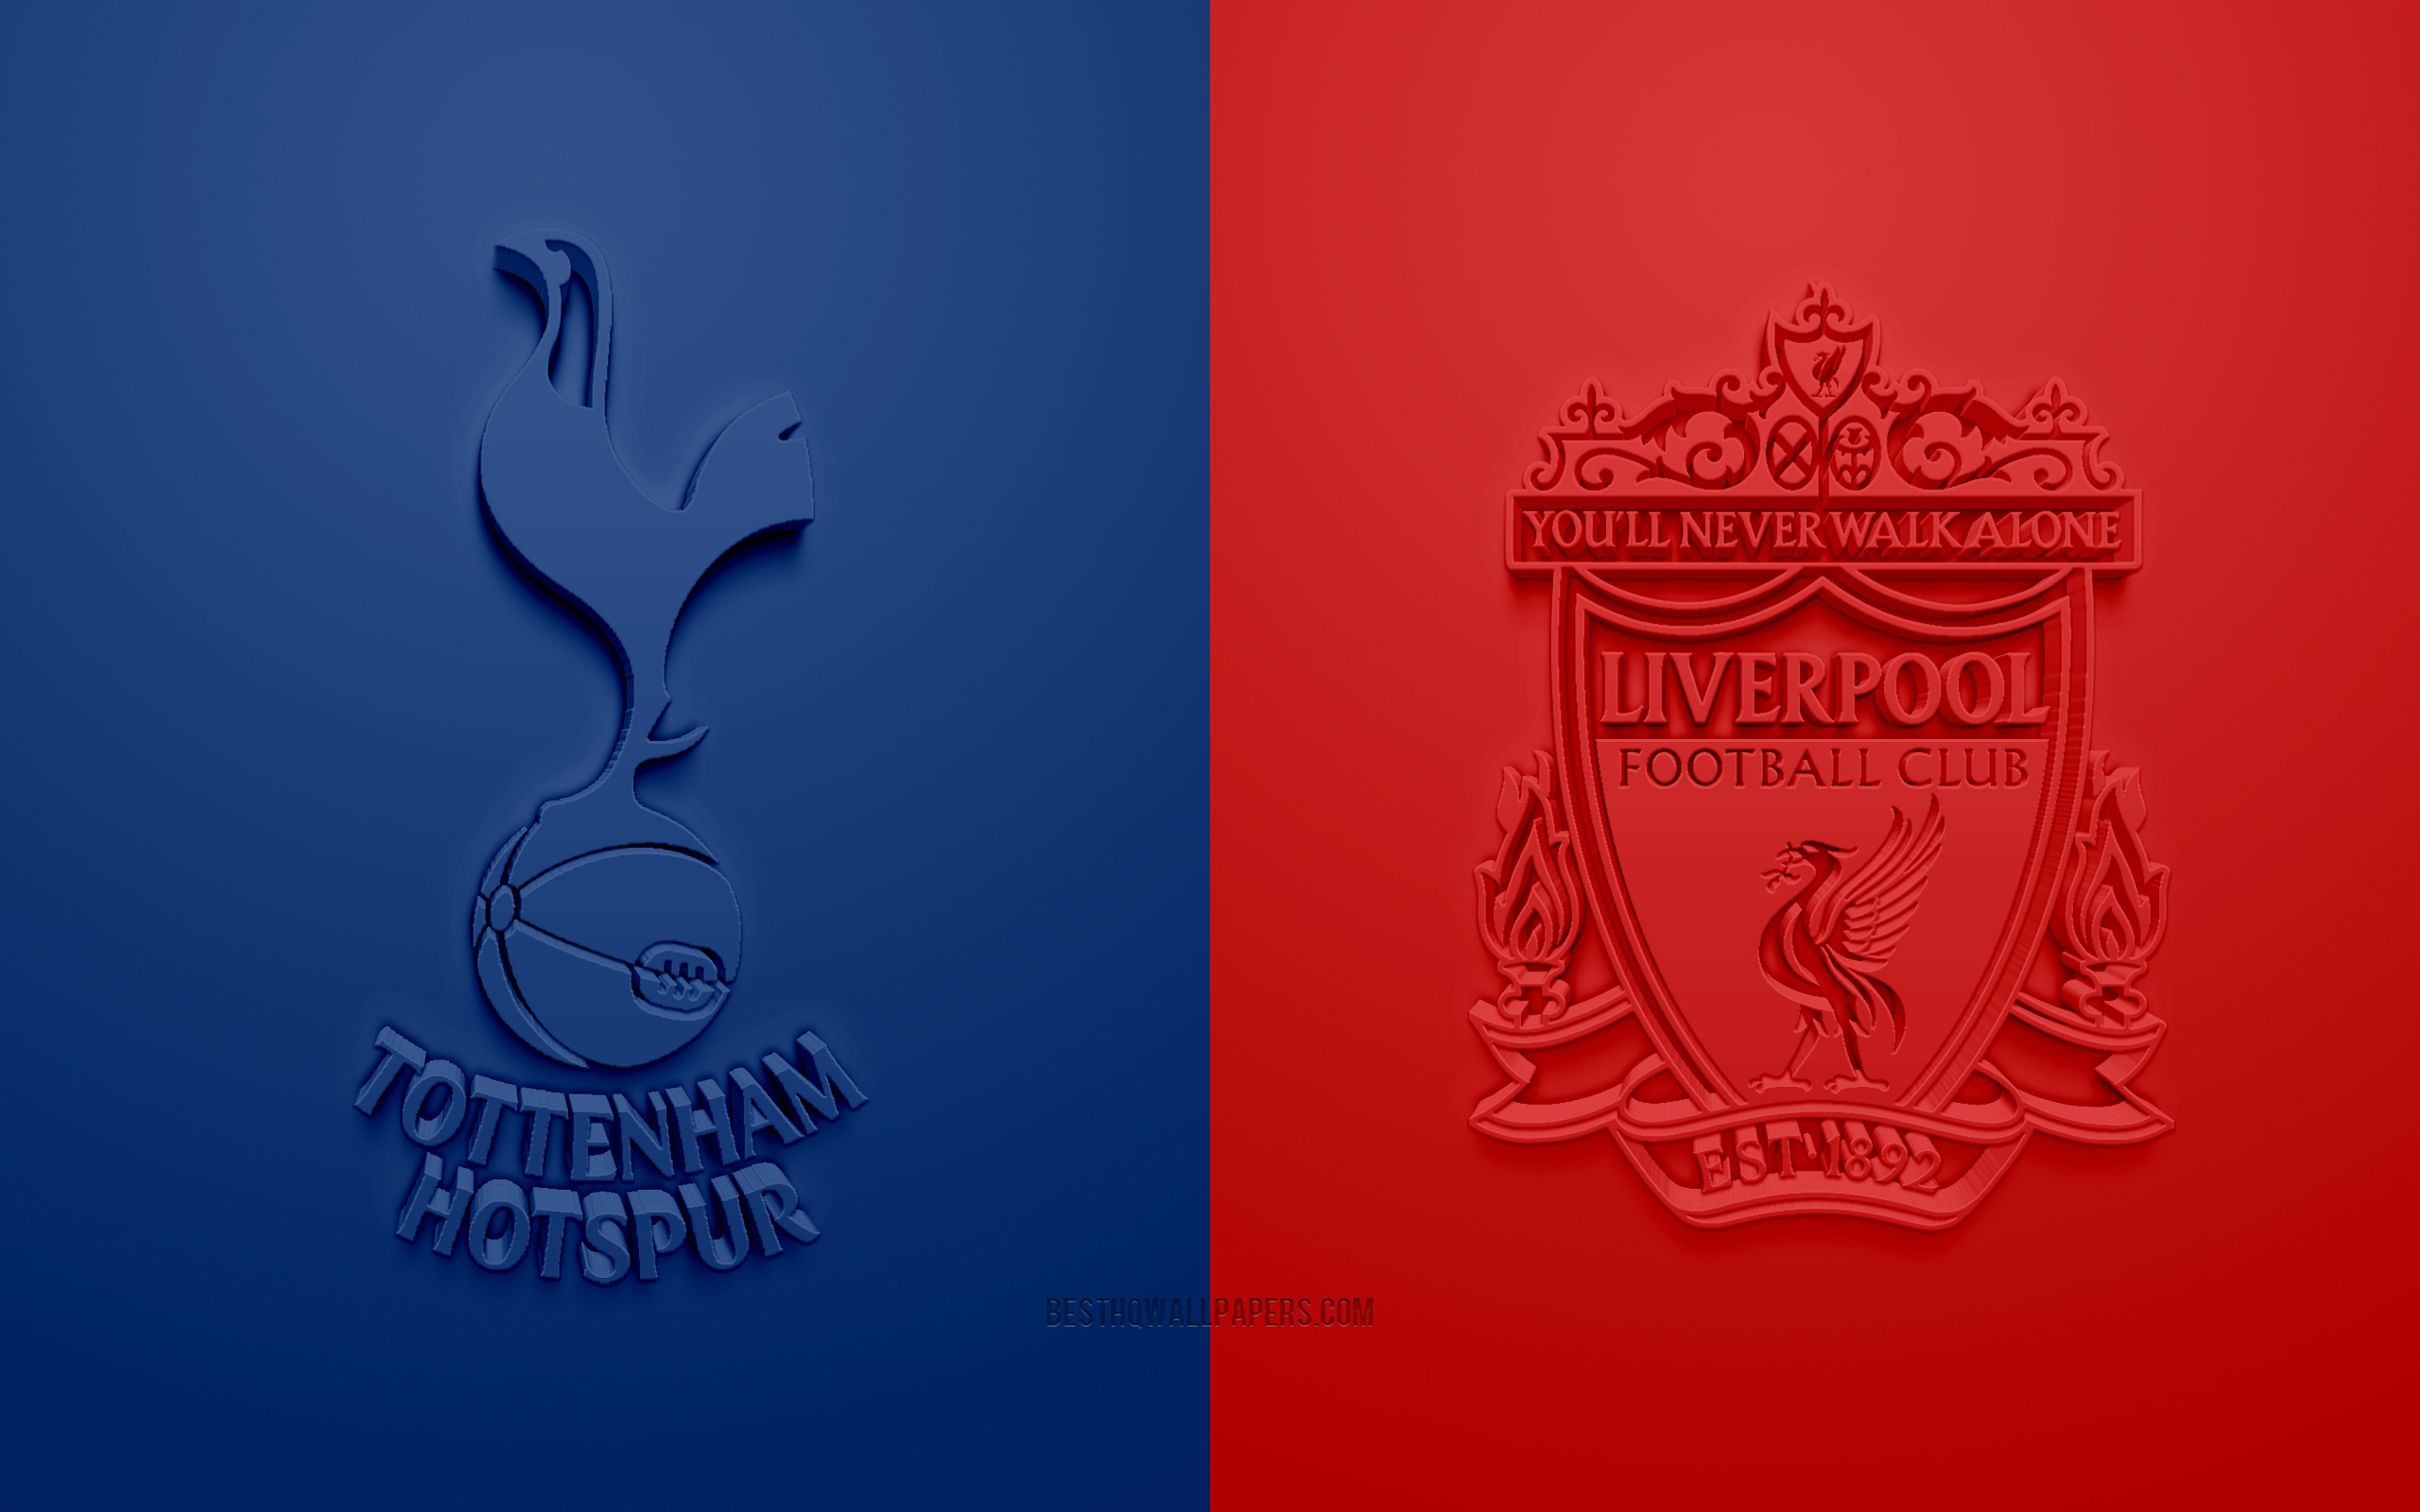 Download wallpaper Tottenham Hotspur FC vs Liverpool FC, 2019 UEFA